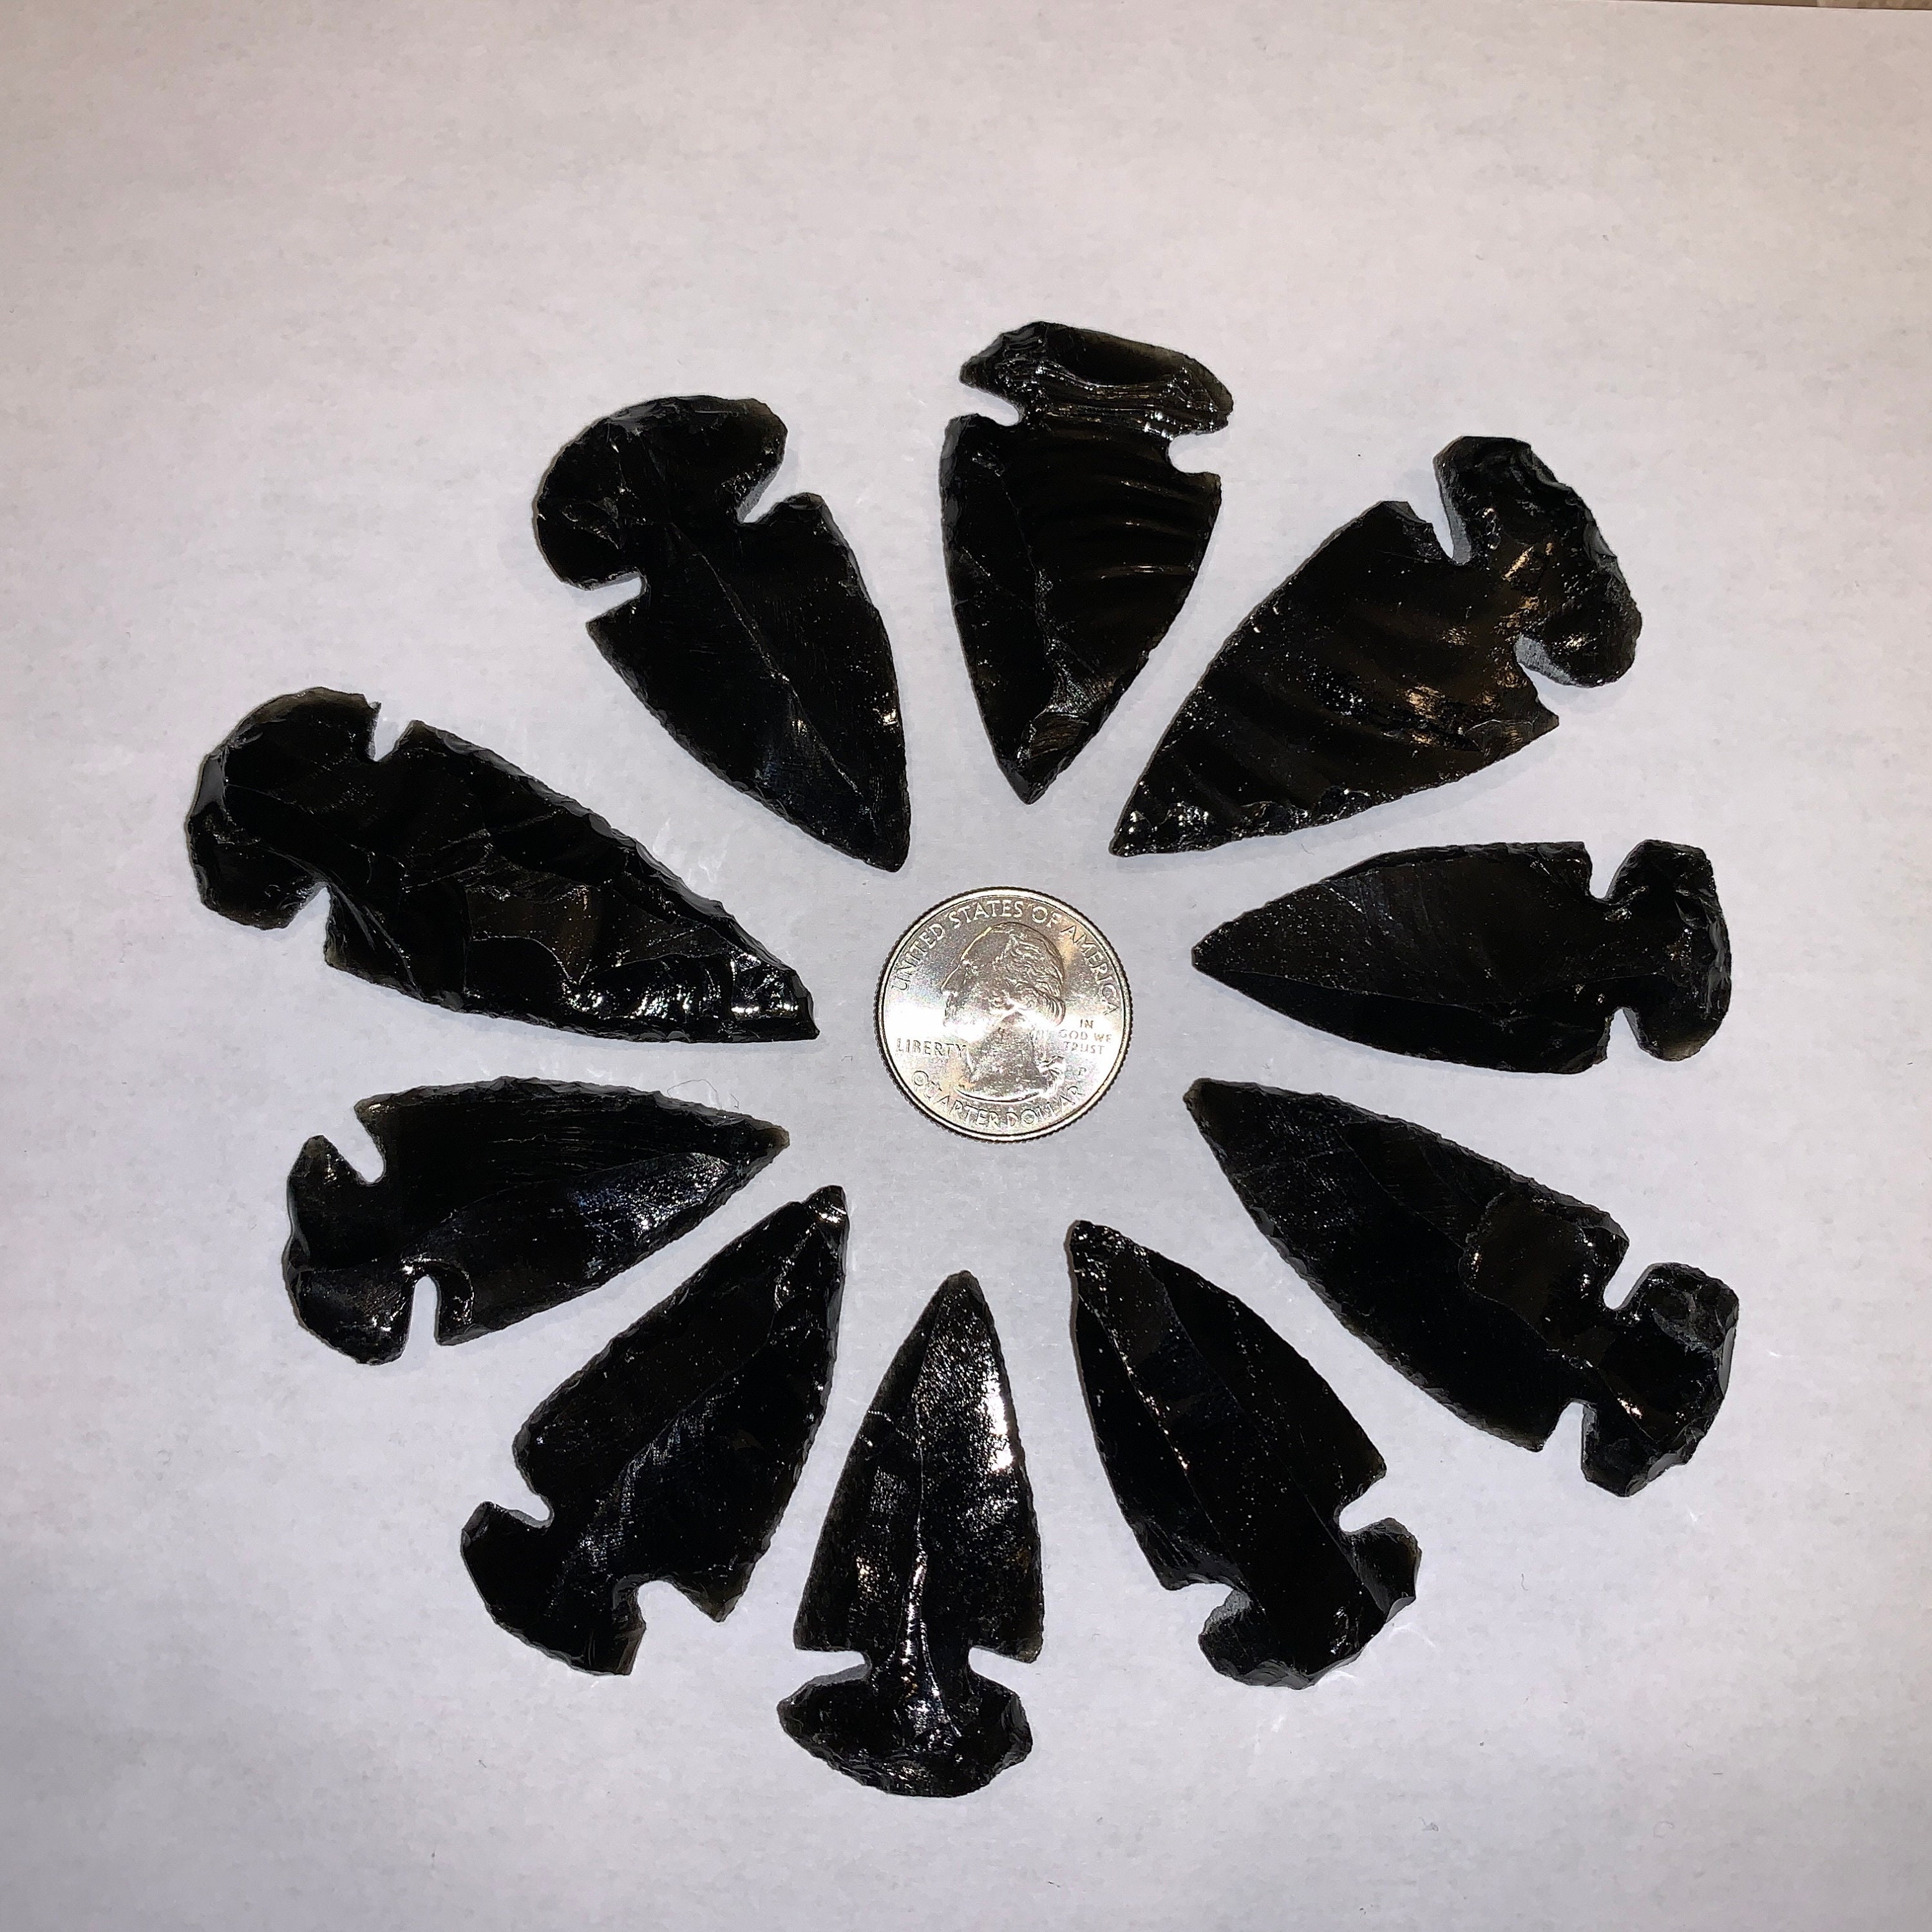 Black Obsidian Arrow Heads Beautiful Five 5